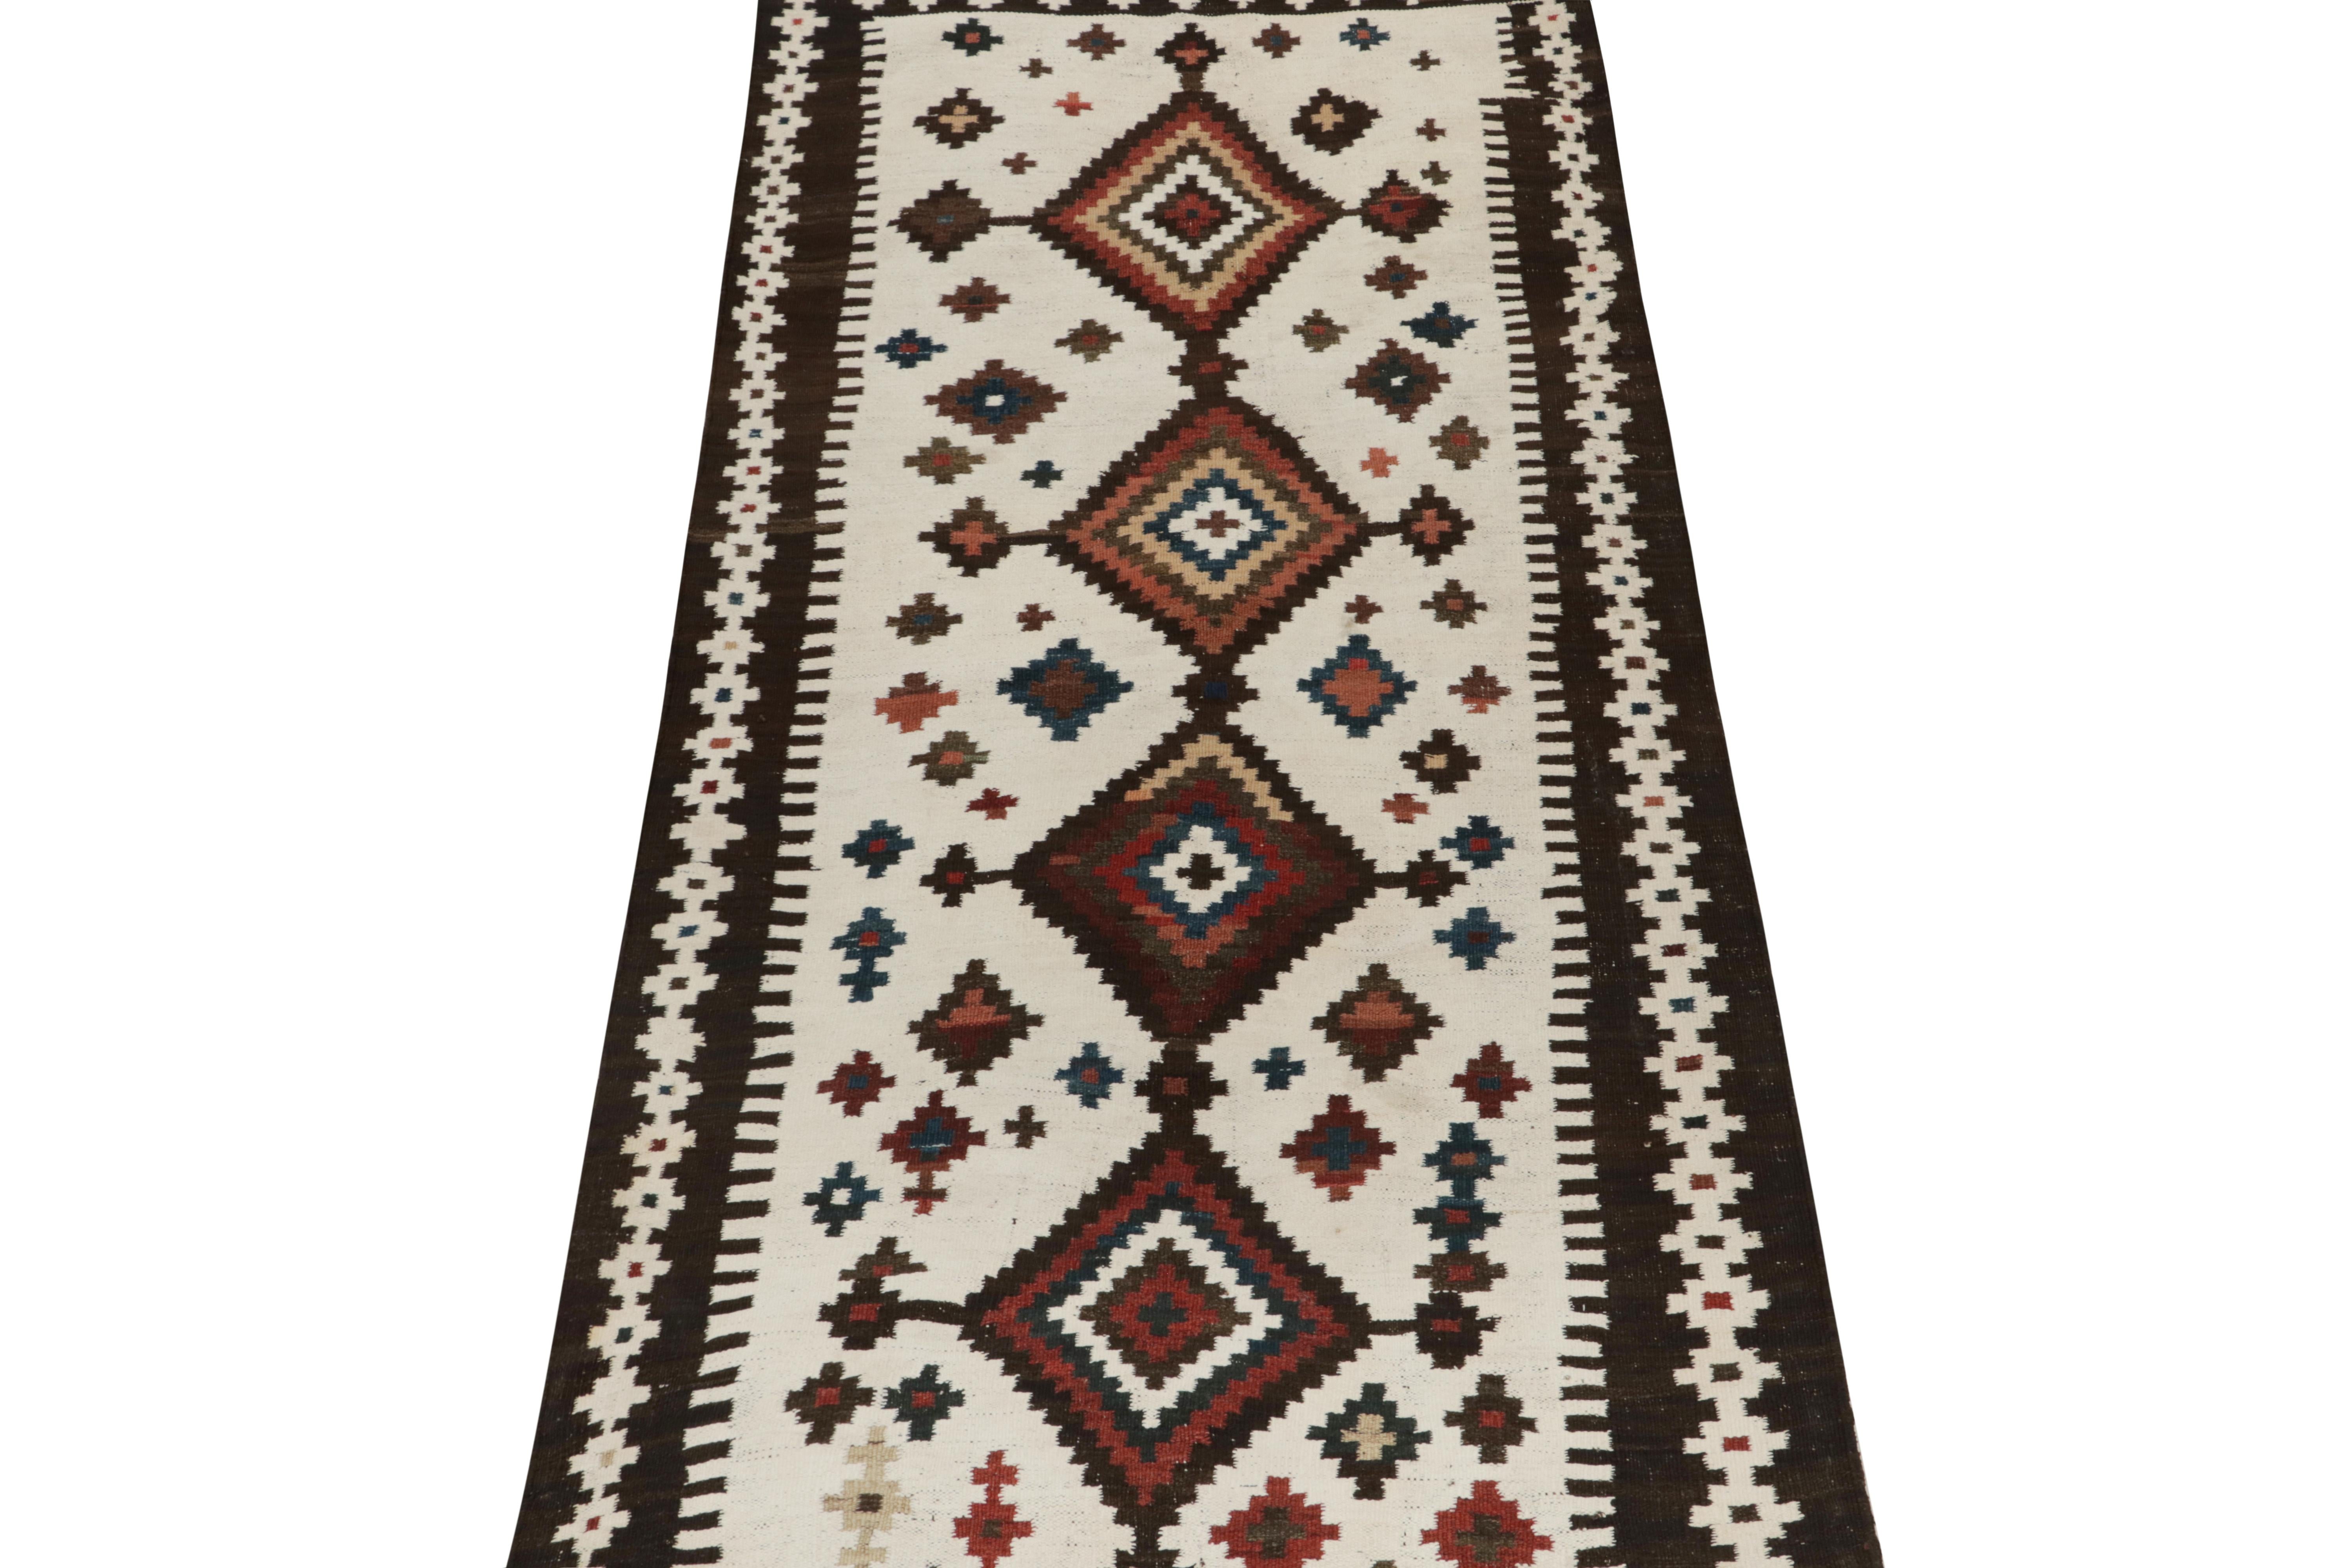 Ce kilim persan vintage 4x7 est un tapis tribal unique pour son époque, tissé à la main en laine vers 1950-1960.

Plus loin dans le Design :

Un champ blanc ouvert accueille des médaillons répétés avec des accents de brun riche, de rouge rouille